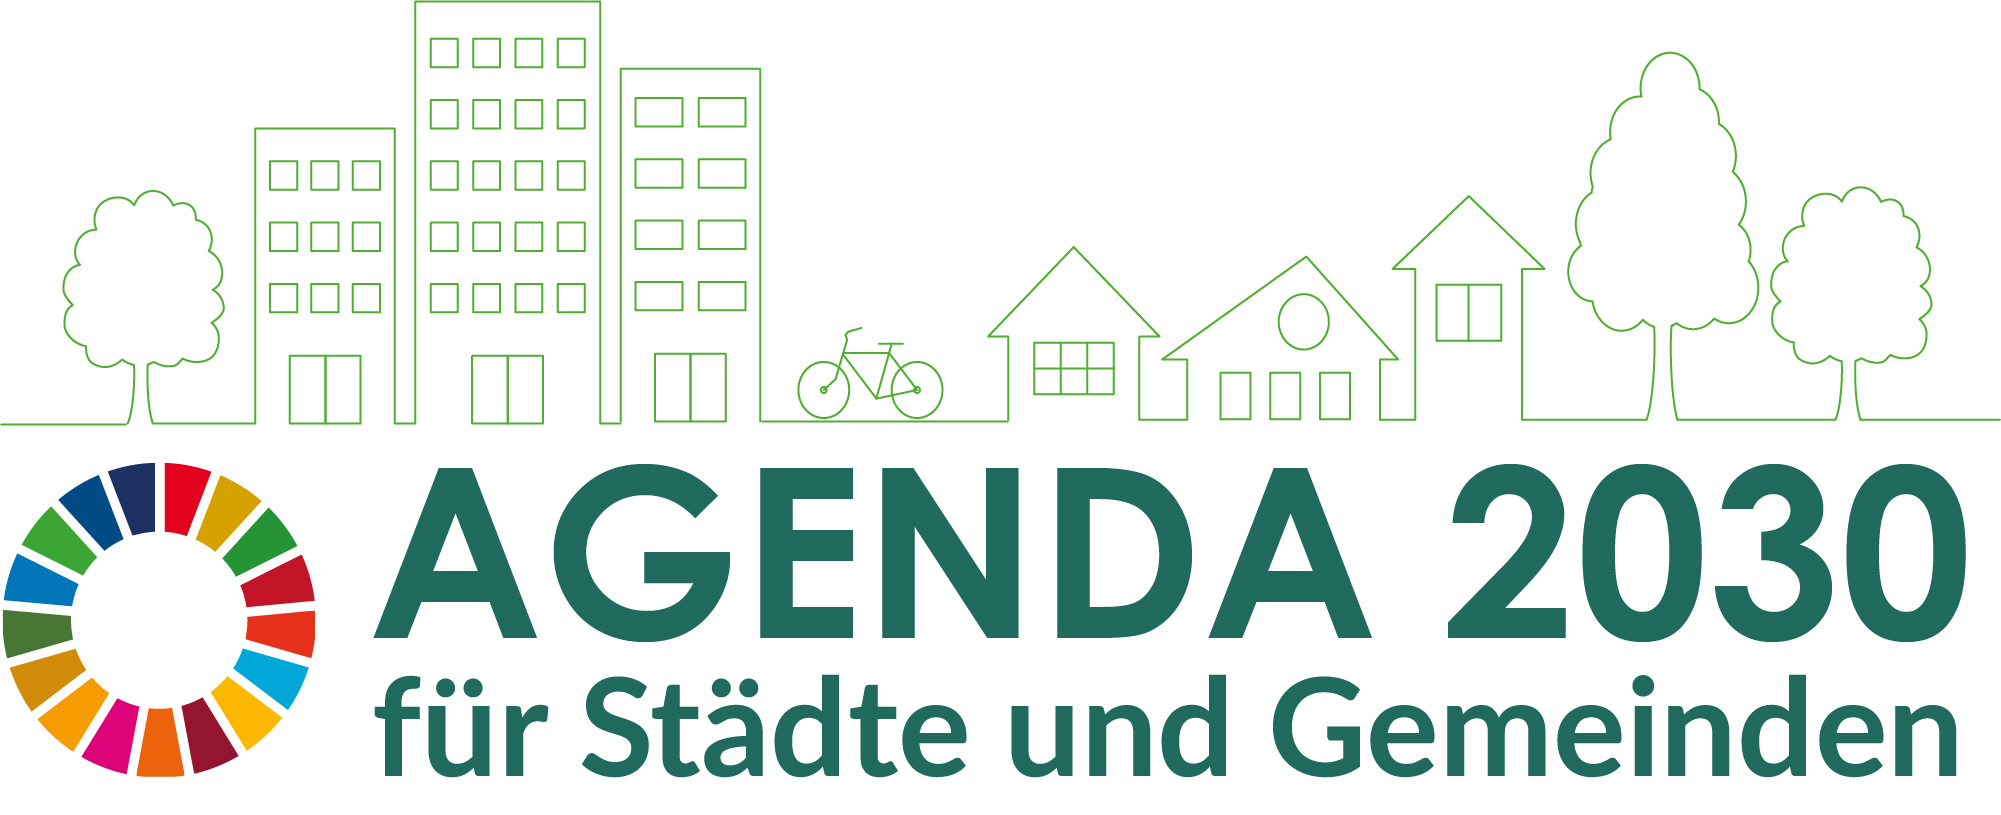 Logo Agenda 2030 für Stadte und Gemeinden